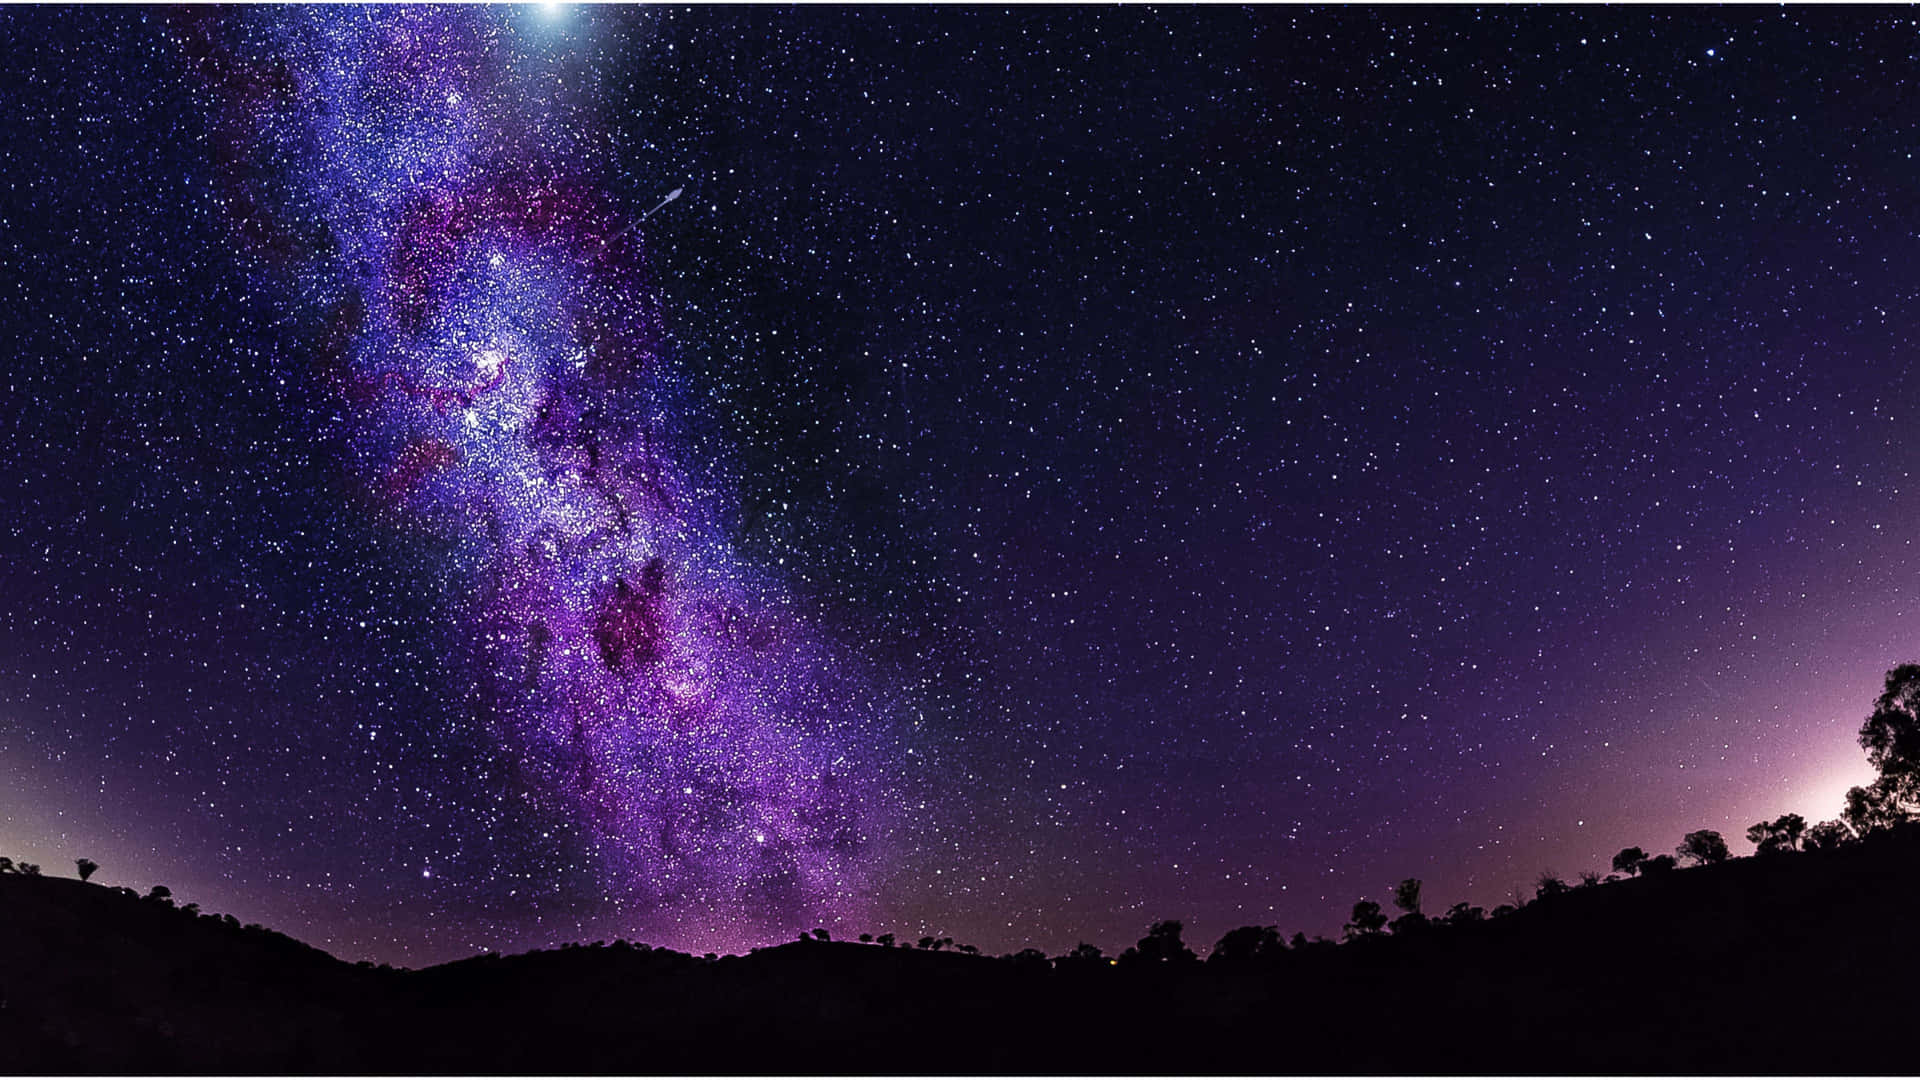 Kig op på himlen og nyd det marværdige syn af dens stjerner, der fylder natteskyen. Wallpaper